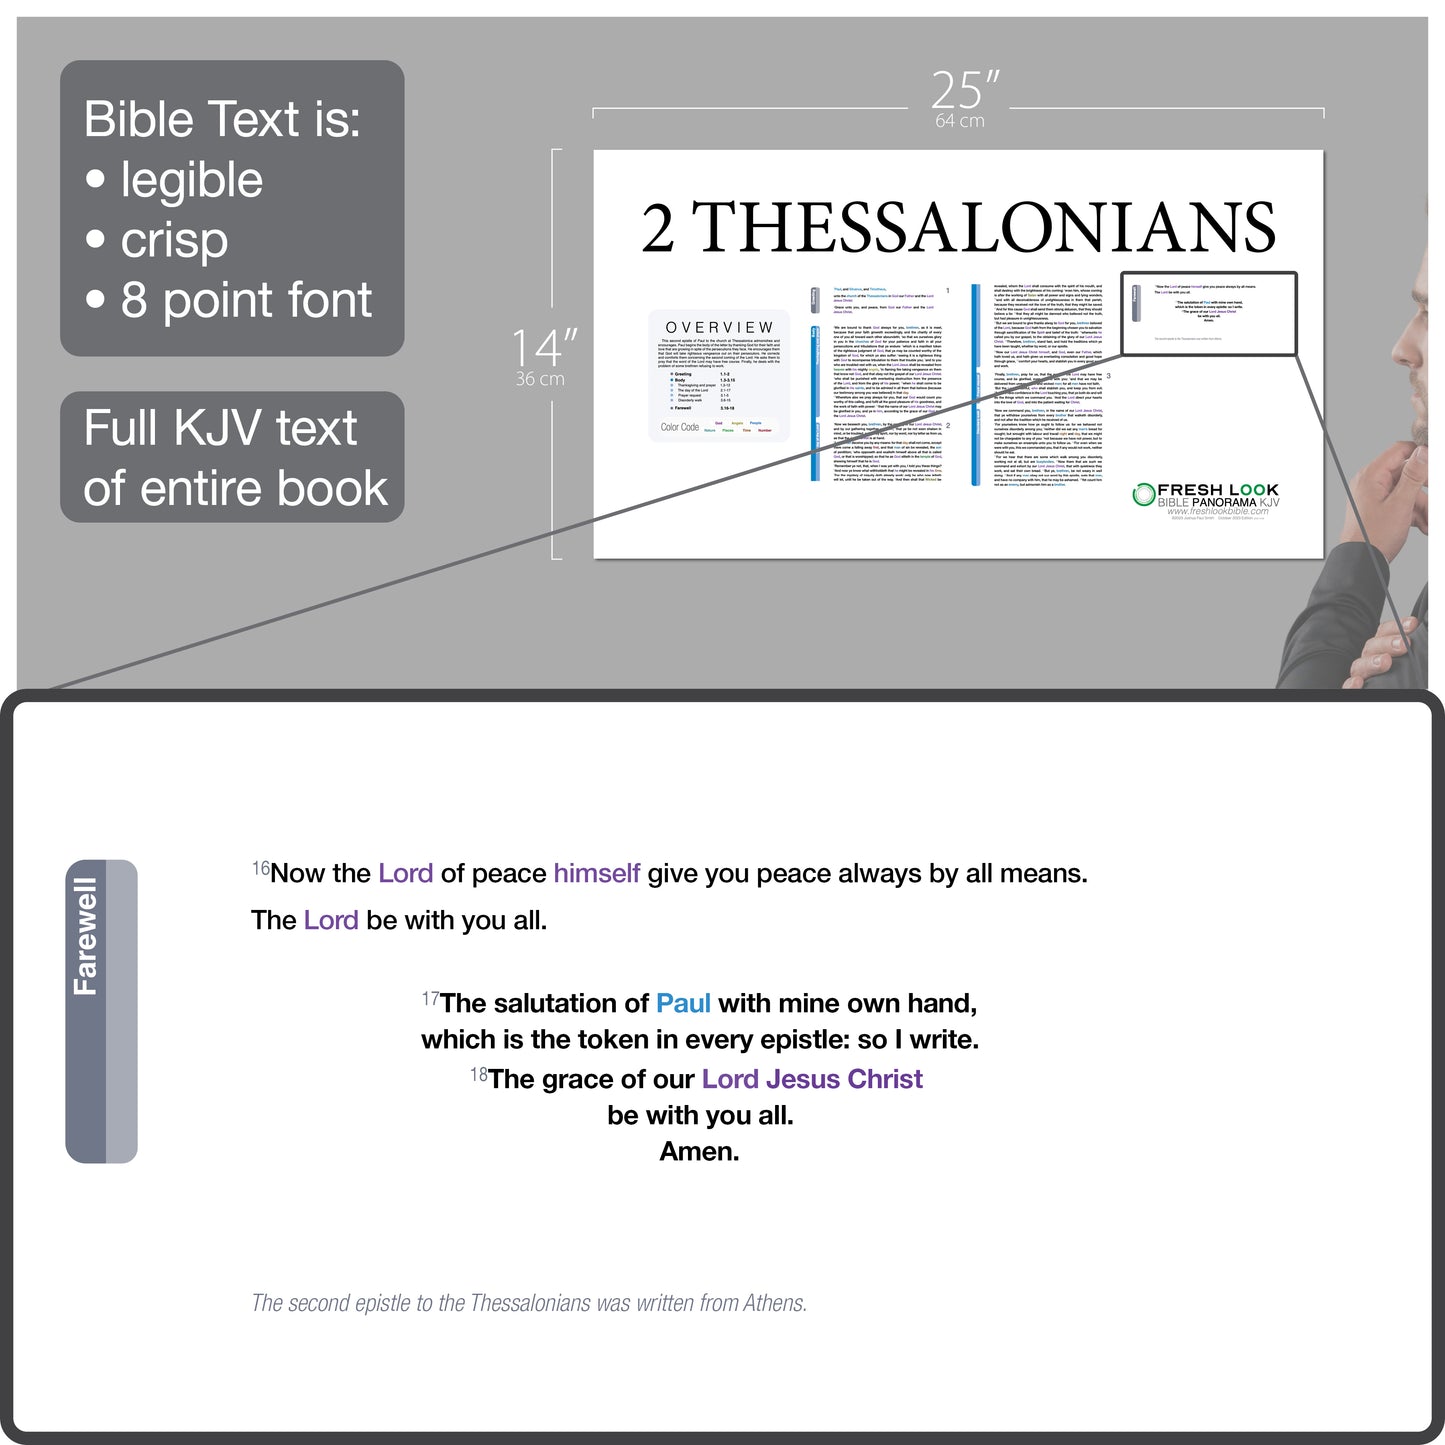 2 Thessalonians Panorama Laminated